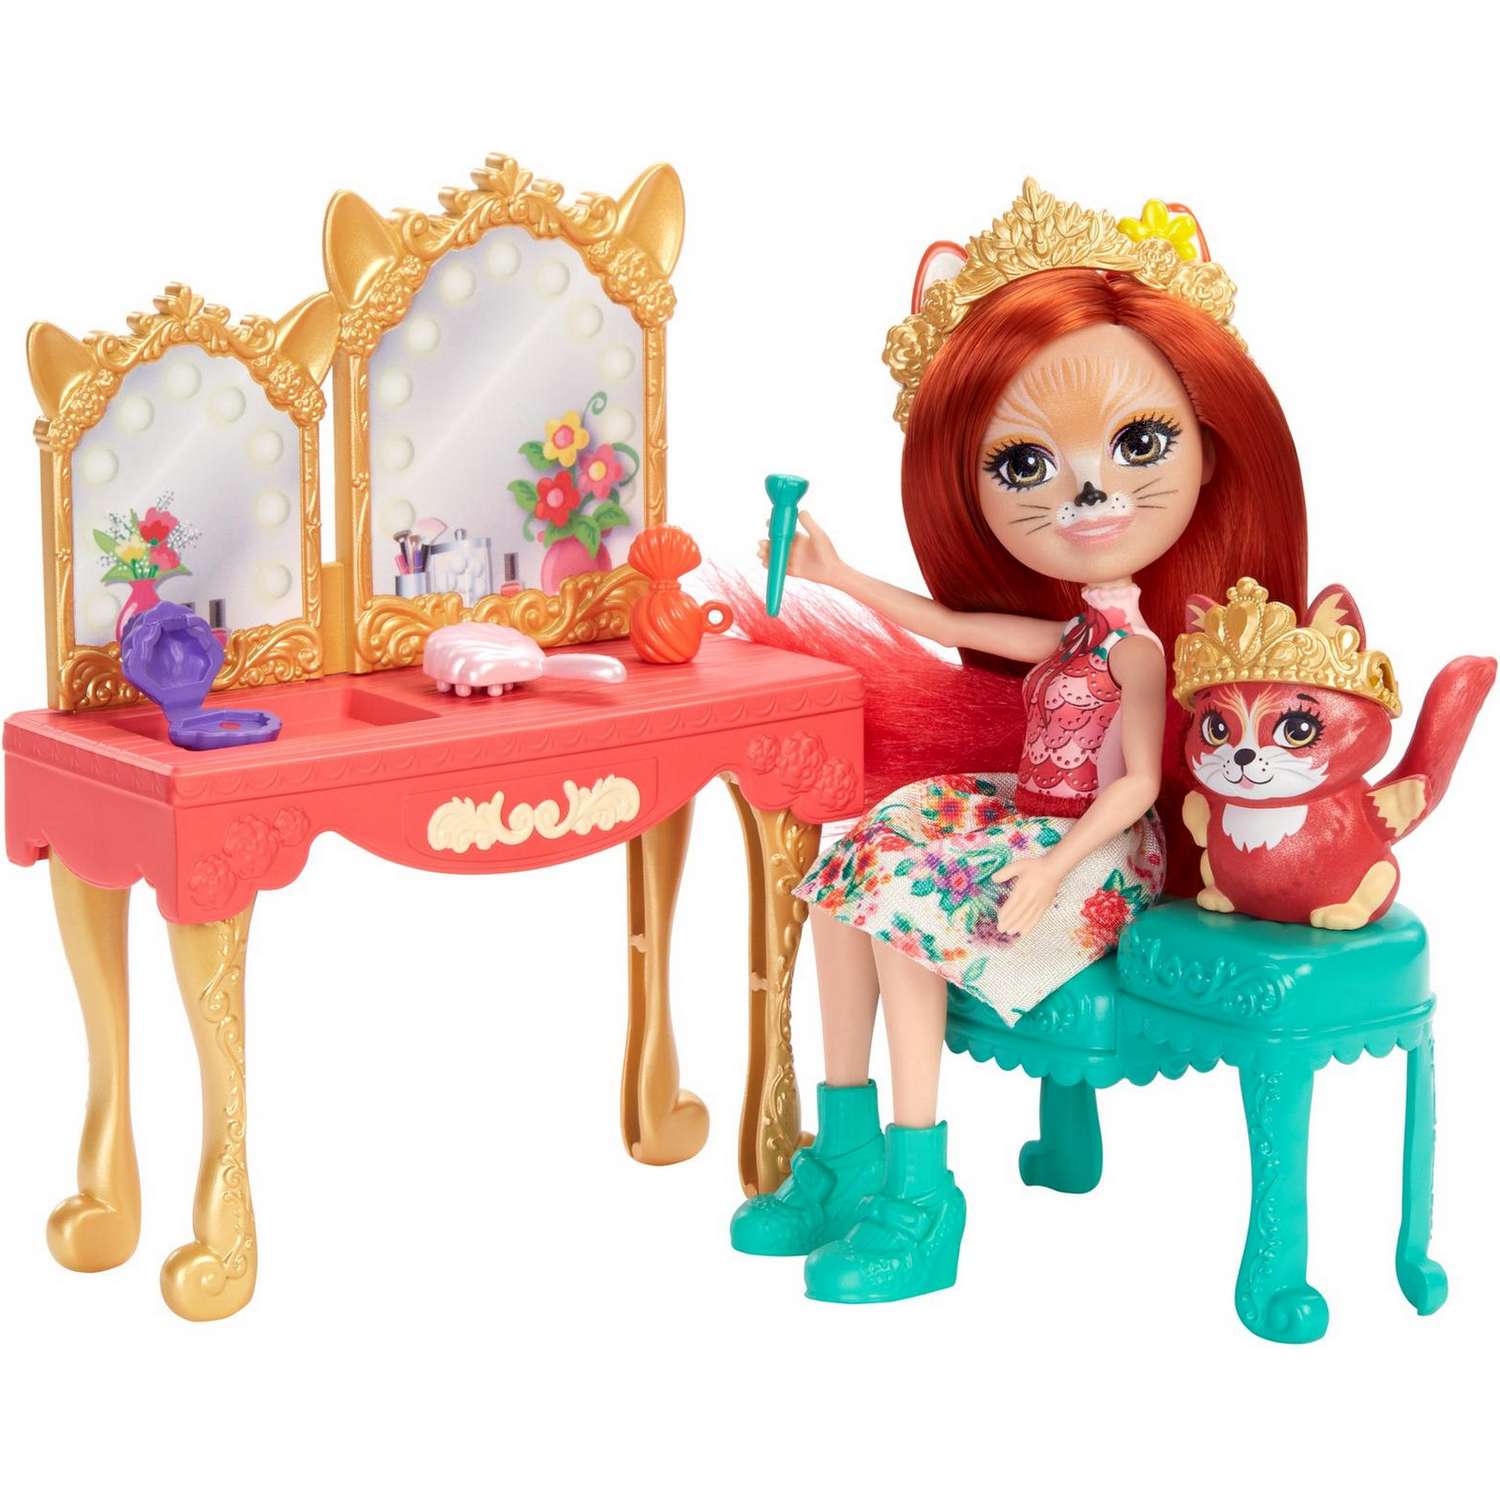 Набор игровой Enchantimals кукла+питомец с аксессуарами Викторианский туалетный столик GYJ05 GJX35 - фото 3